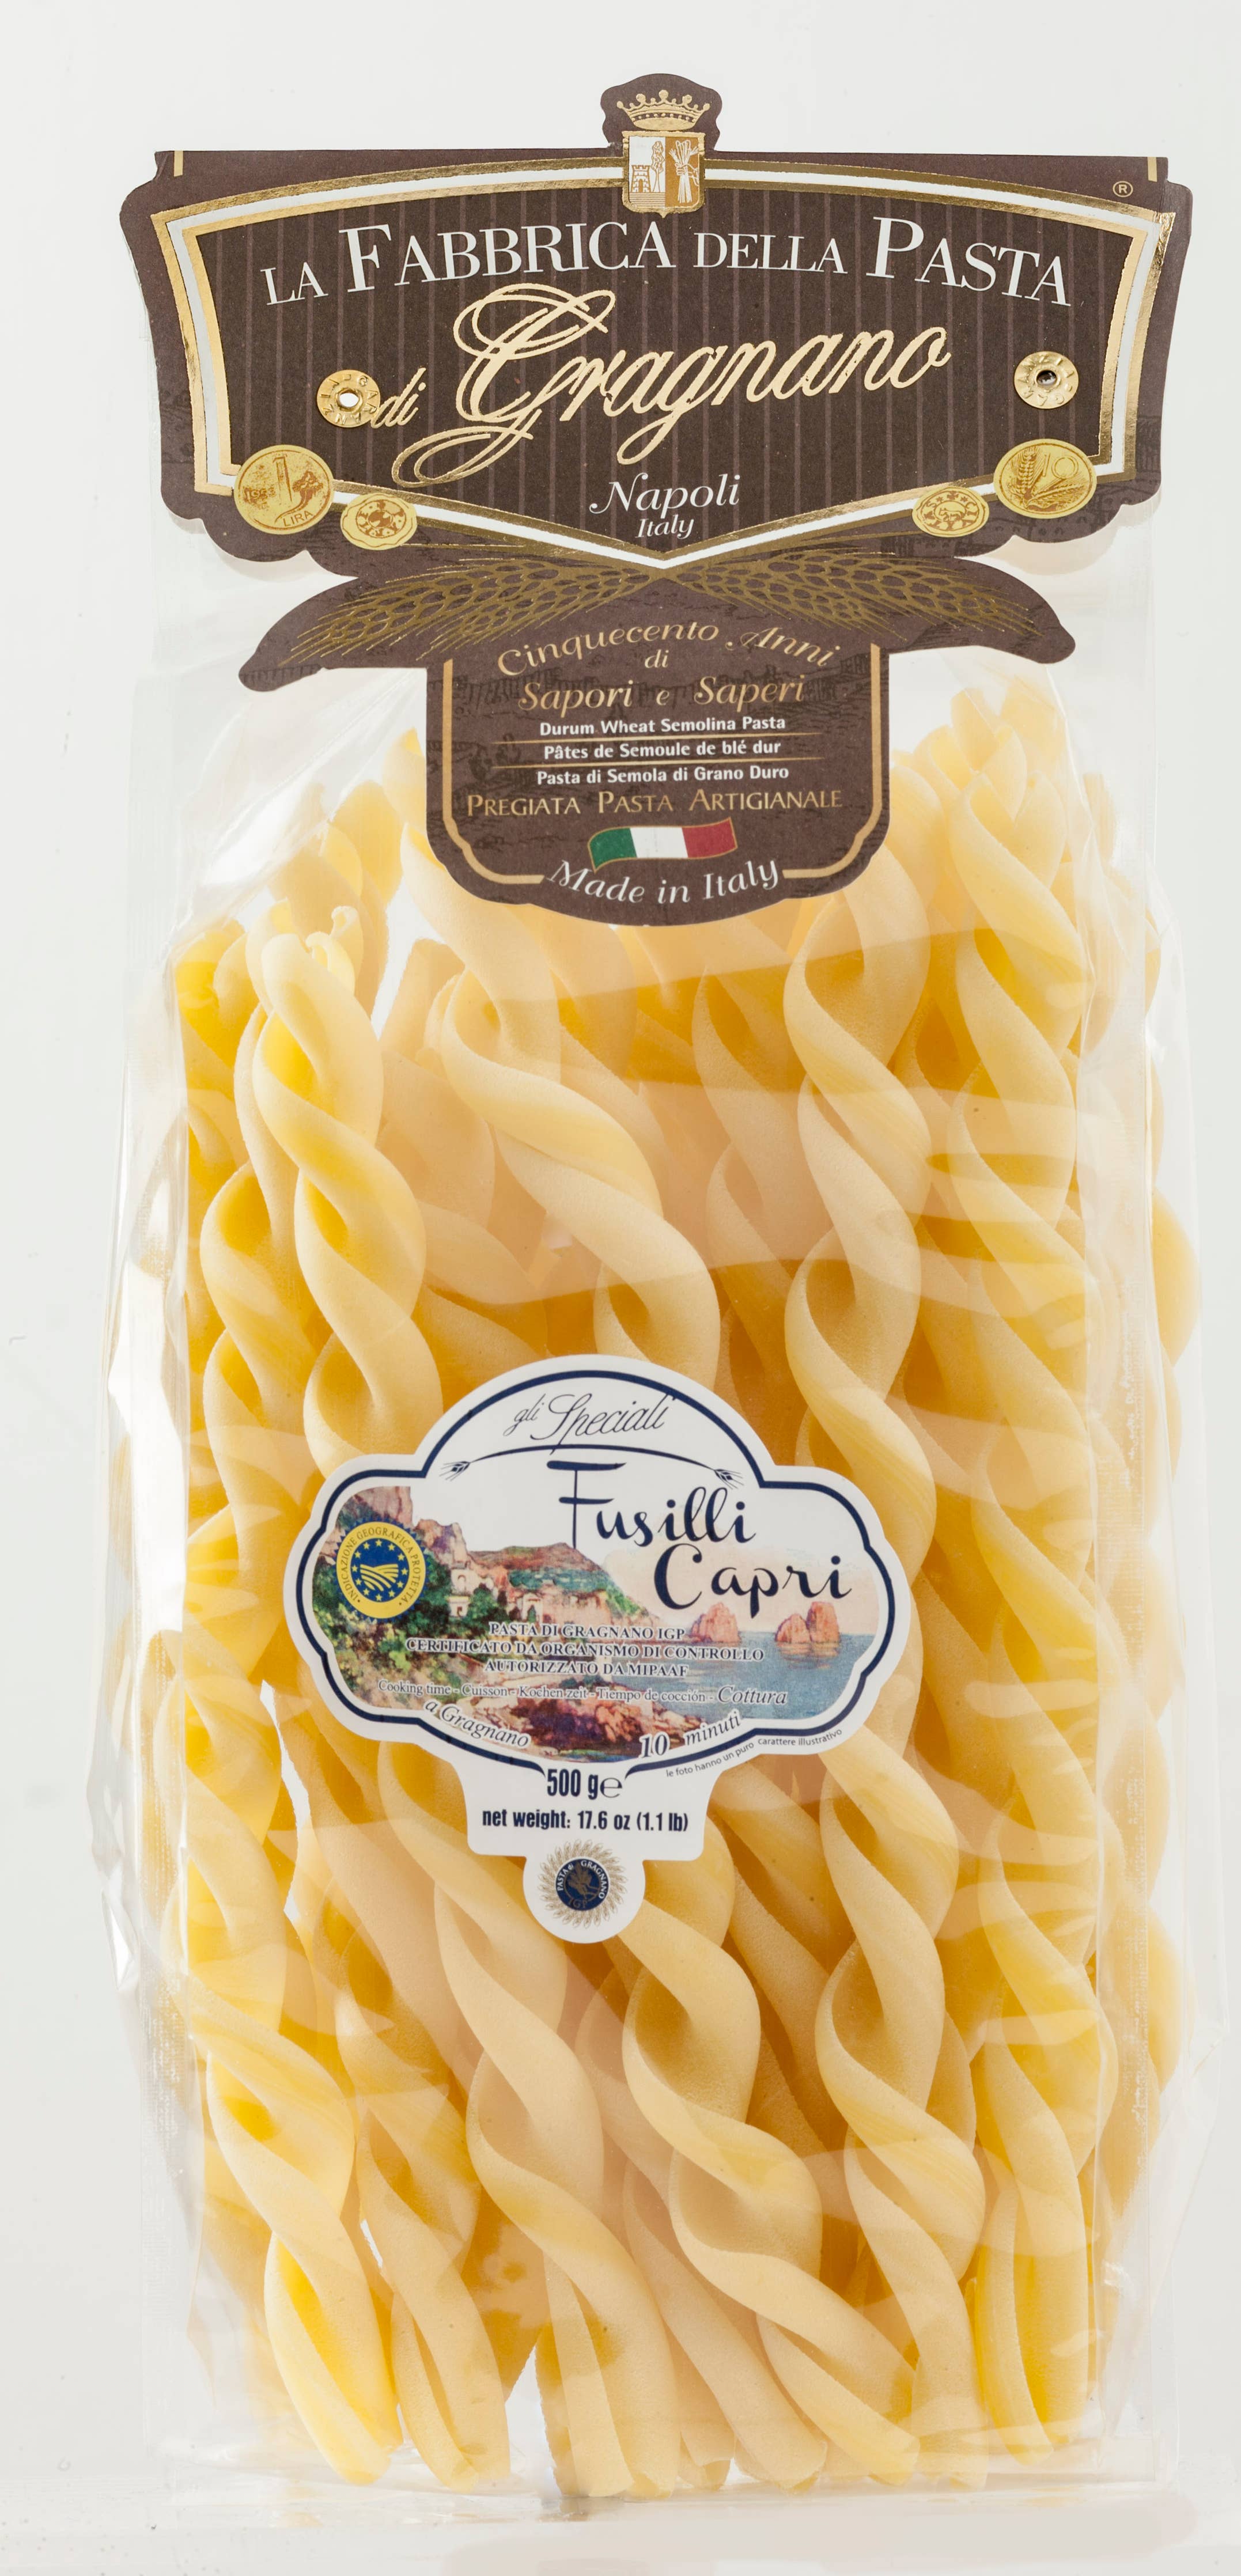 Fusilli Capri by La Fabbrica della Pasta 1.1lb